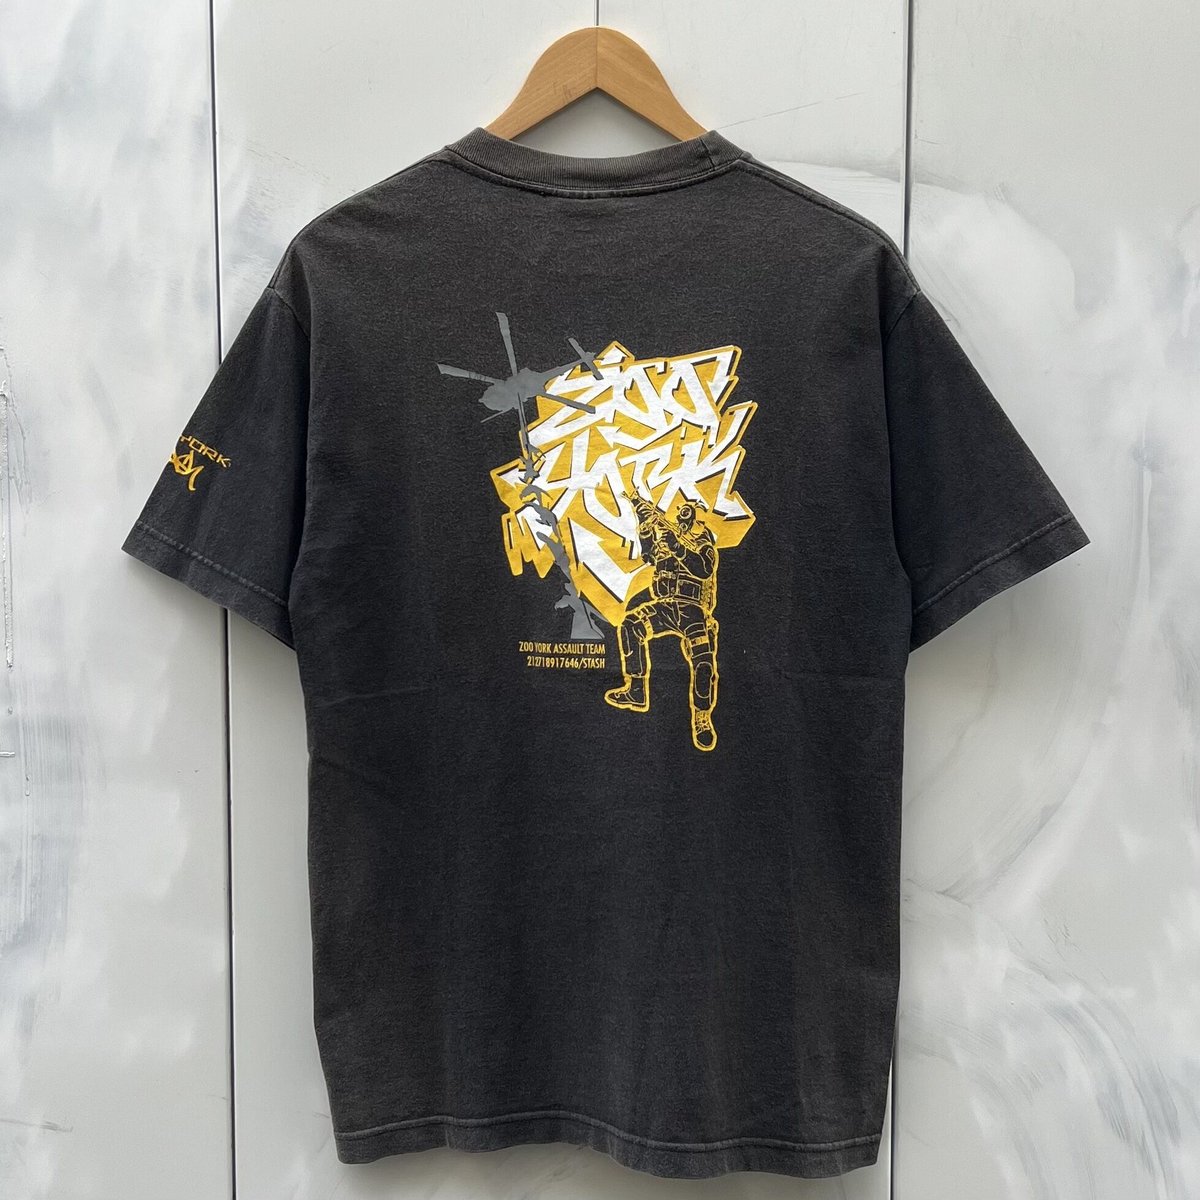 ZOO YORK x STASH/ズーヨークｘスタッシュ グラフィックTシャツ 2000年前後 Made in USA (USED)